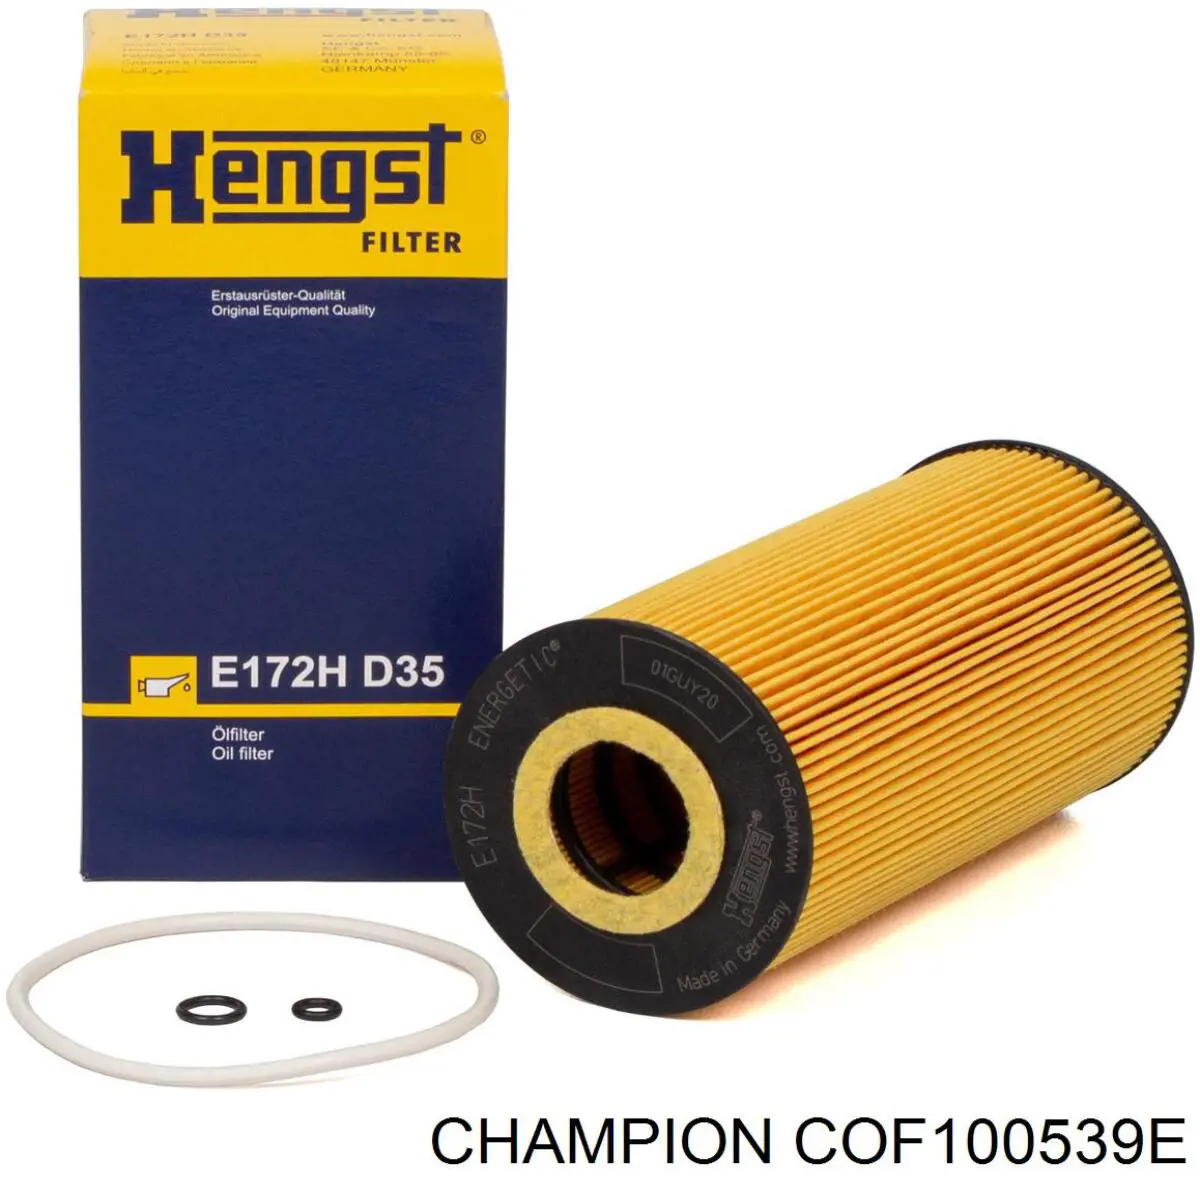 COF100539E Champion filtro de aceite